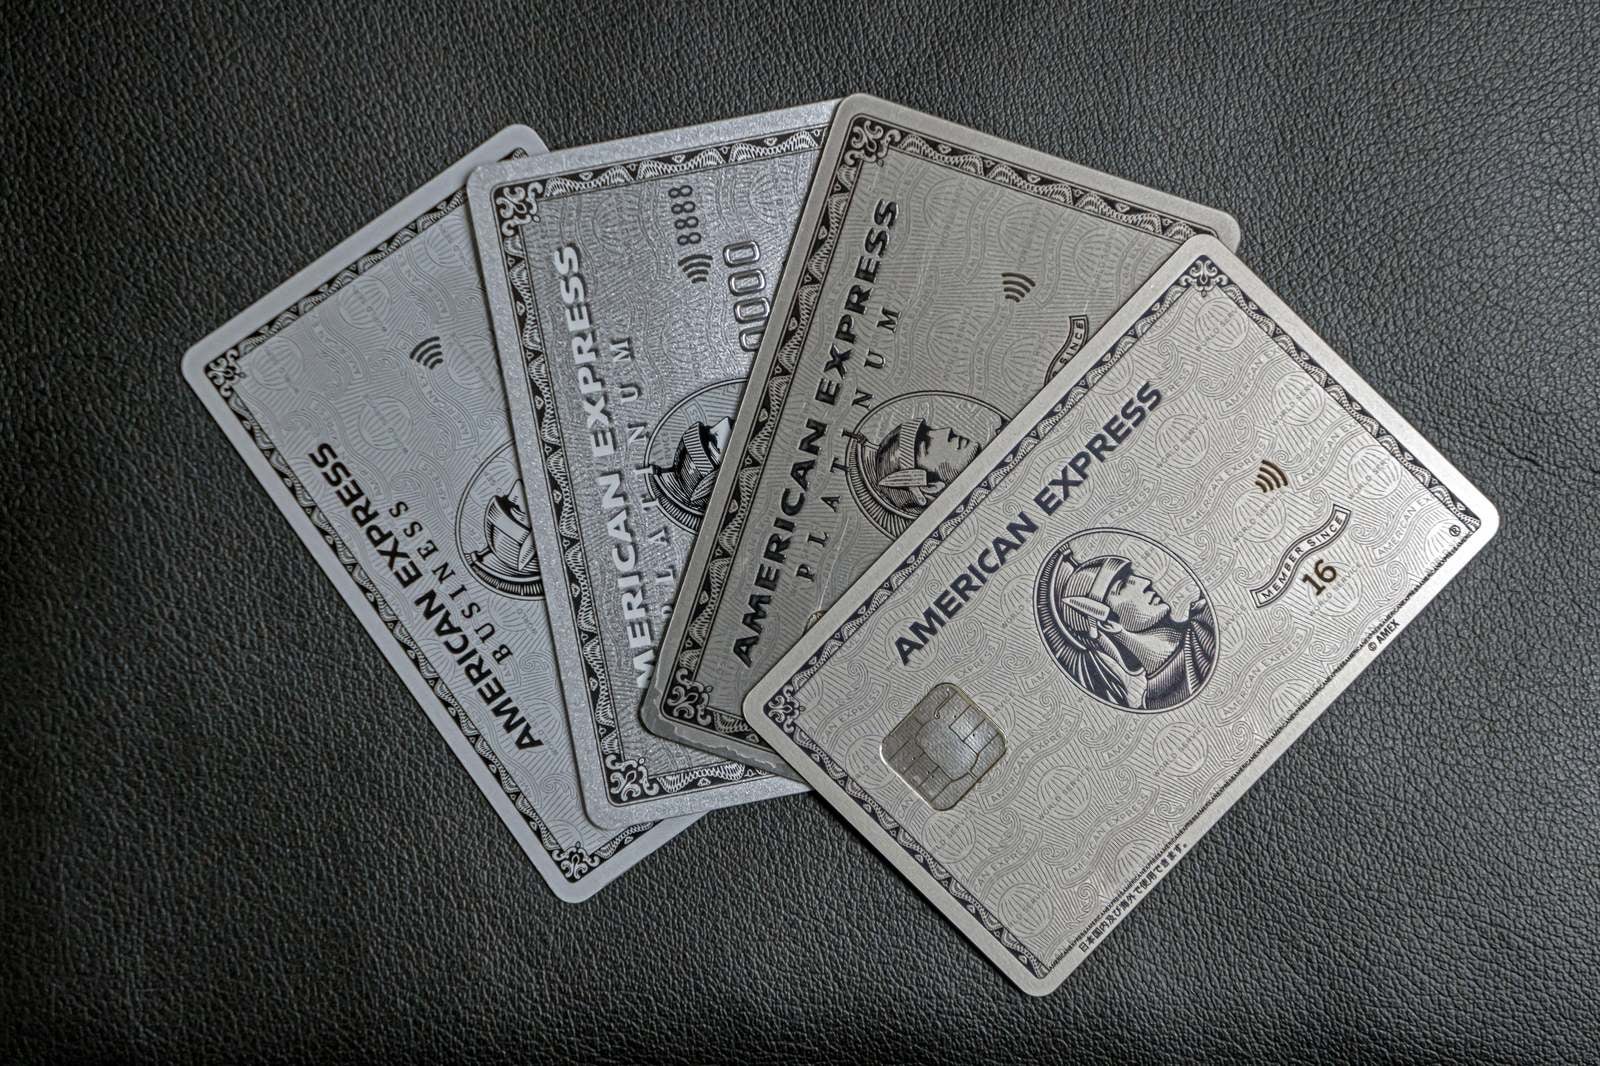 「微妙にデザインが変わってきているアメックスプラチナの券面」の写真